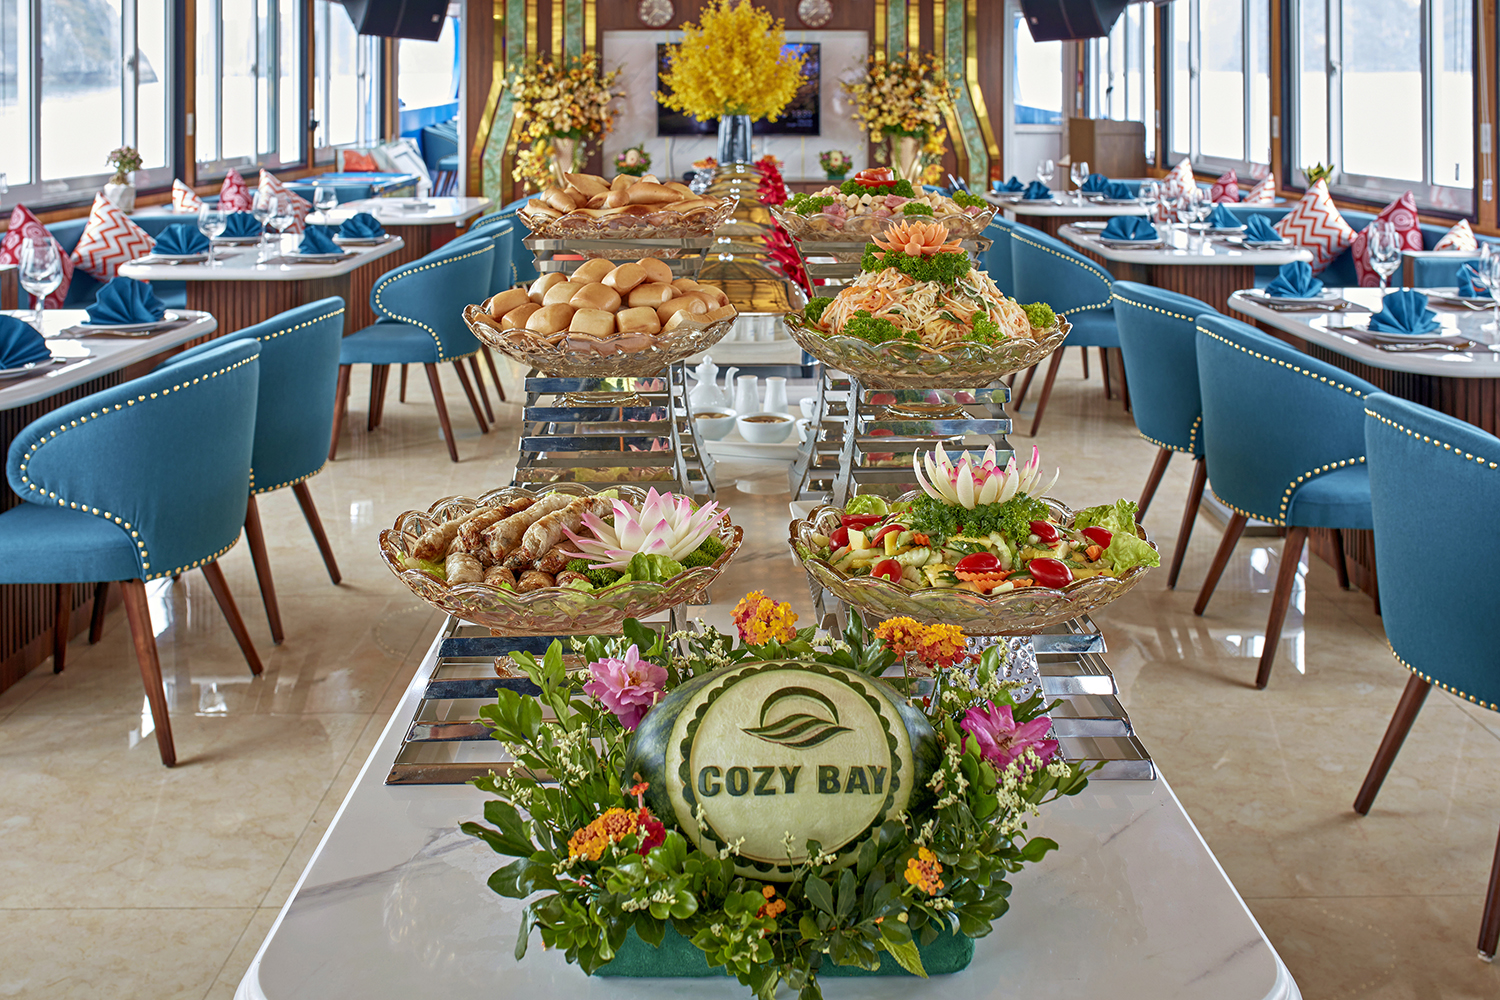 Food Cozy Bay Cruise-Halong Luxury Day Cruise, Du Thuyền Cozy Bay Premium Cruise Halong Bay.